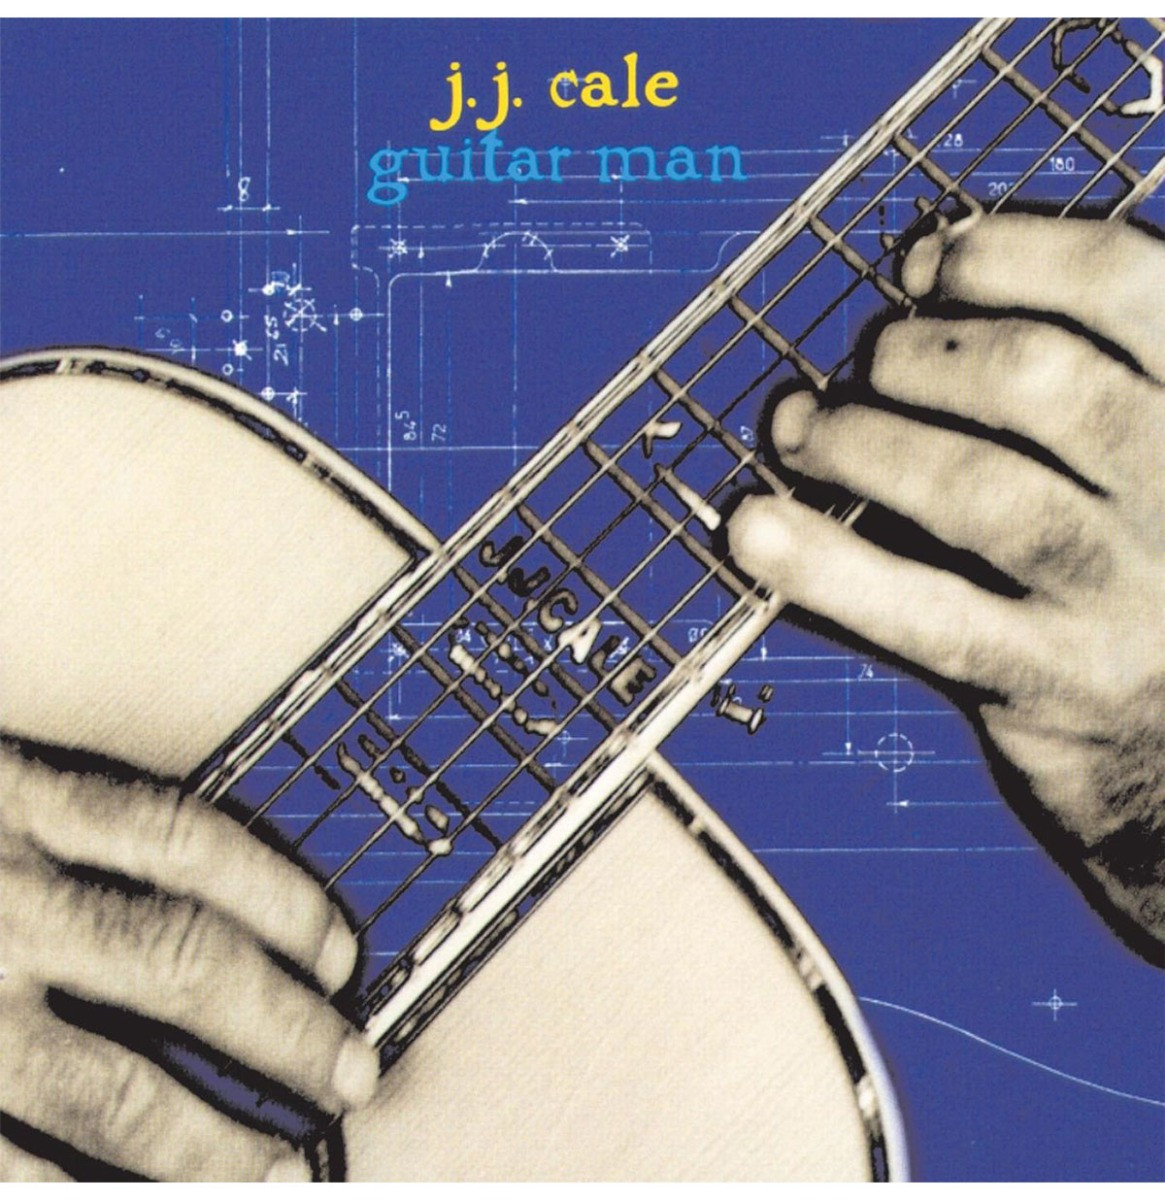 J.J. Cale - Guitar Man LP